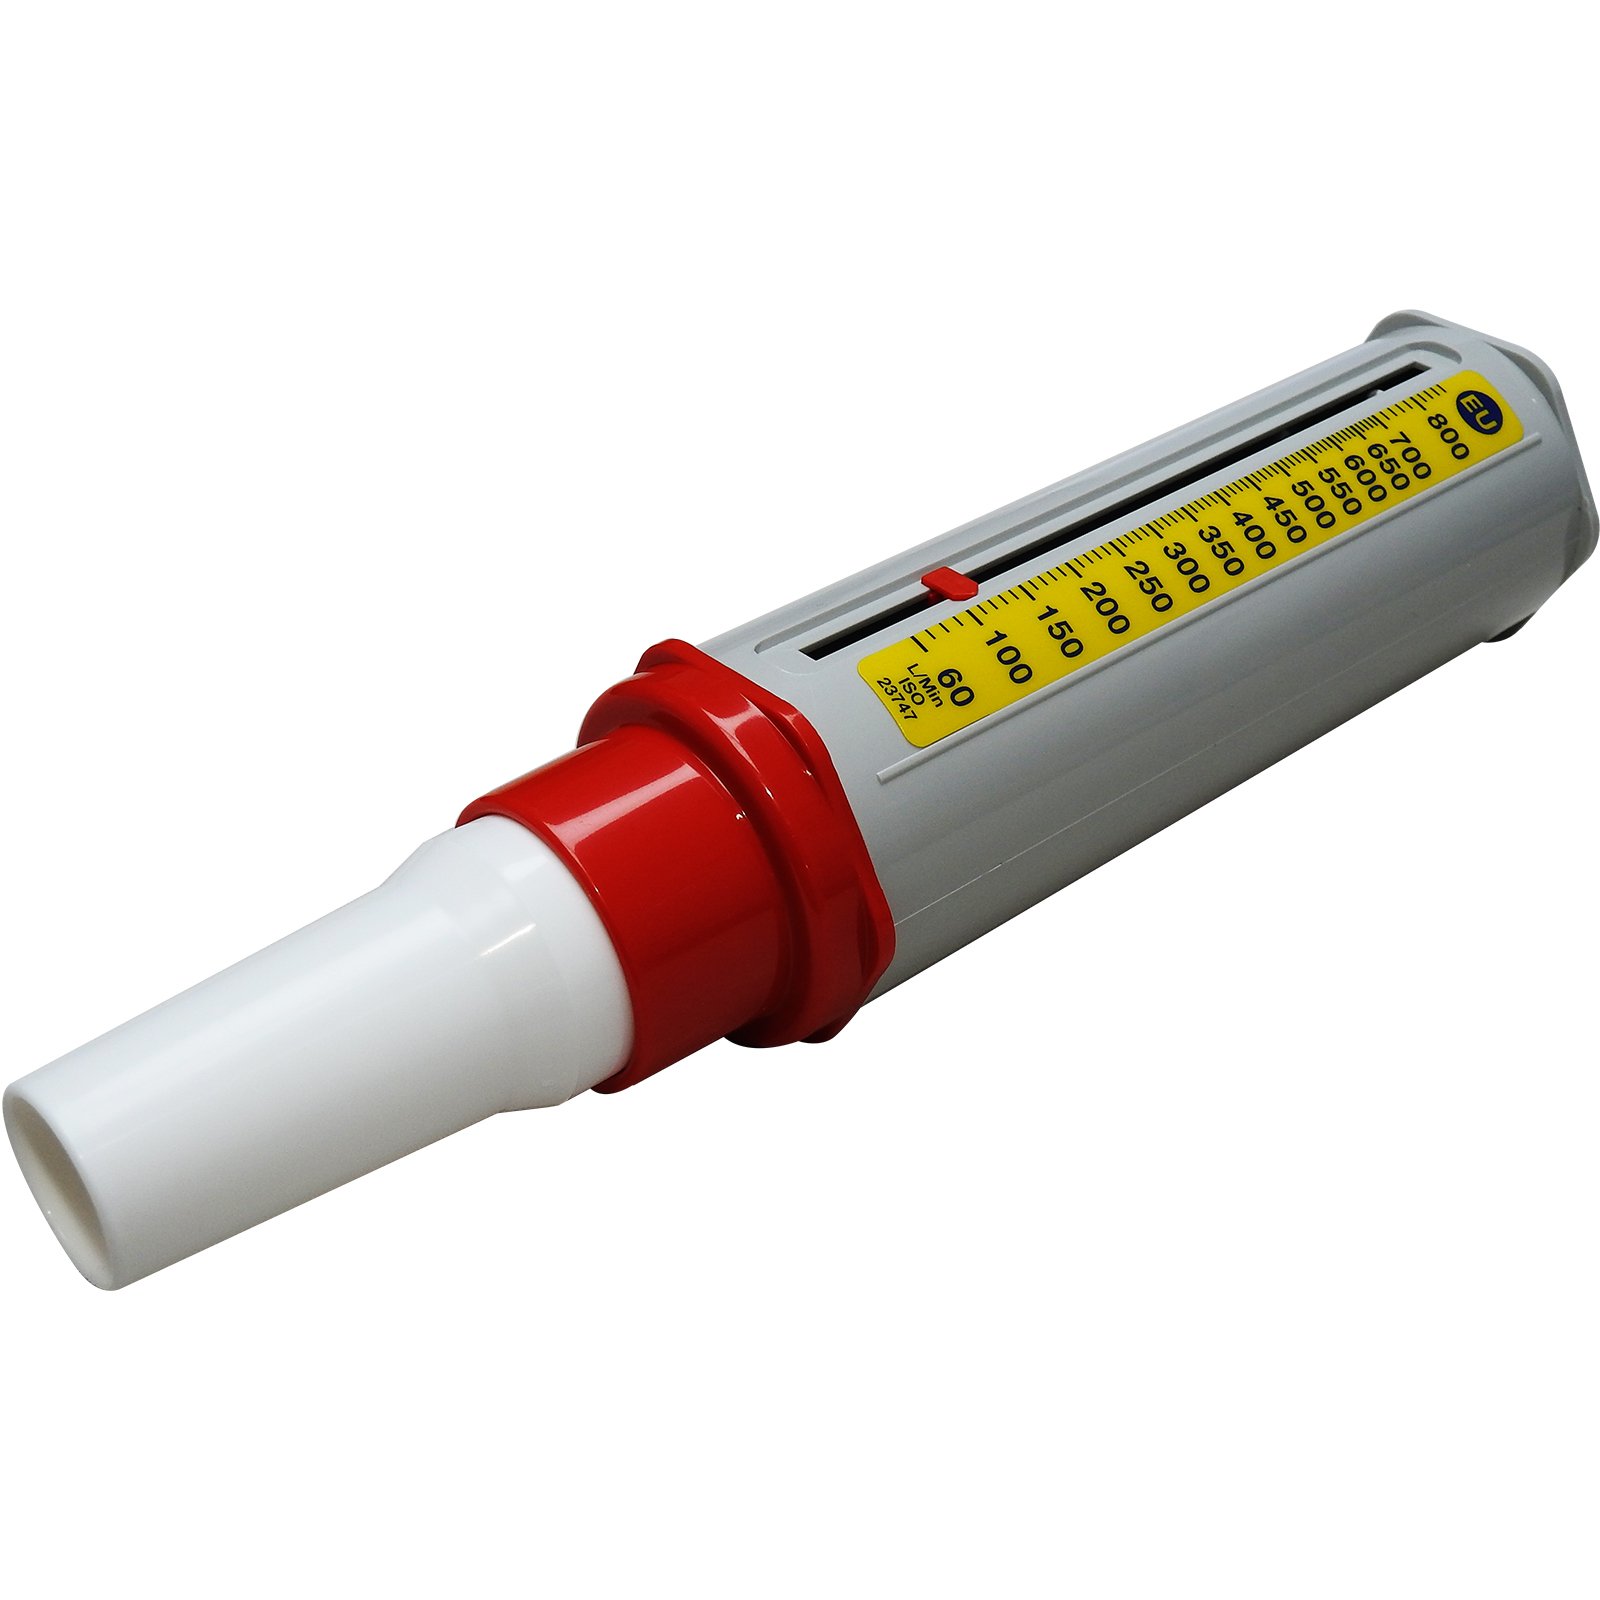 Mini Wright Peak Durchflussmesser Asthma Monitor Atemtester, Einzelpackung